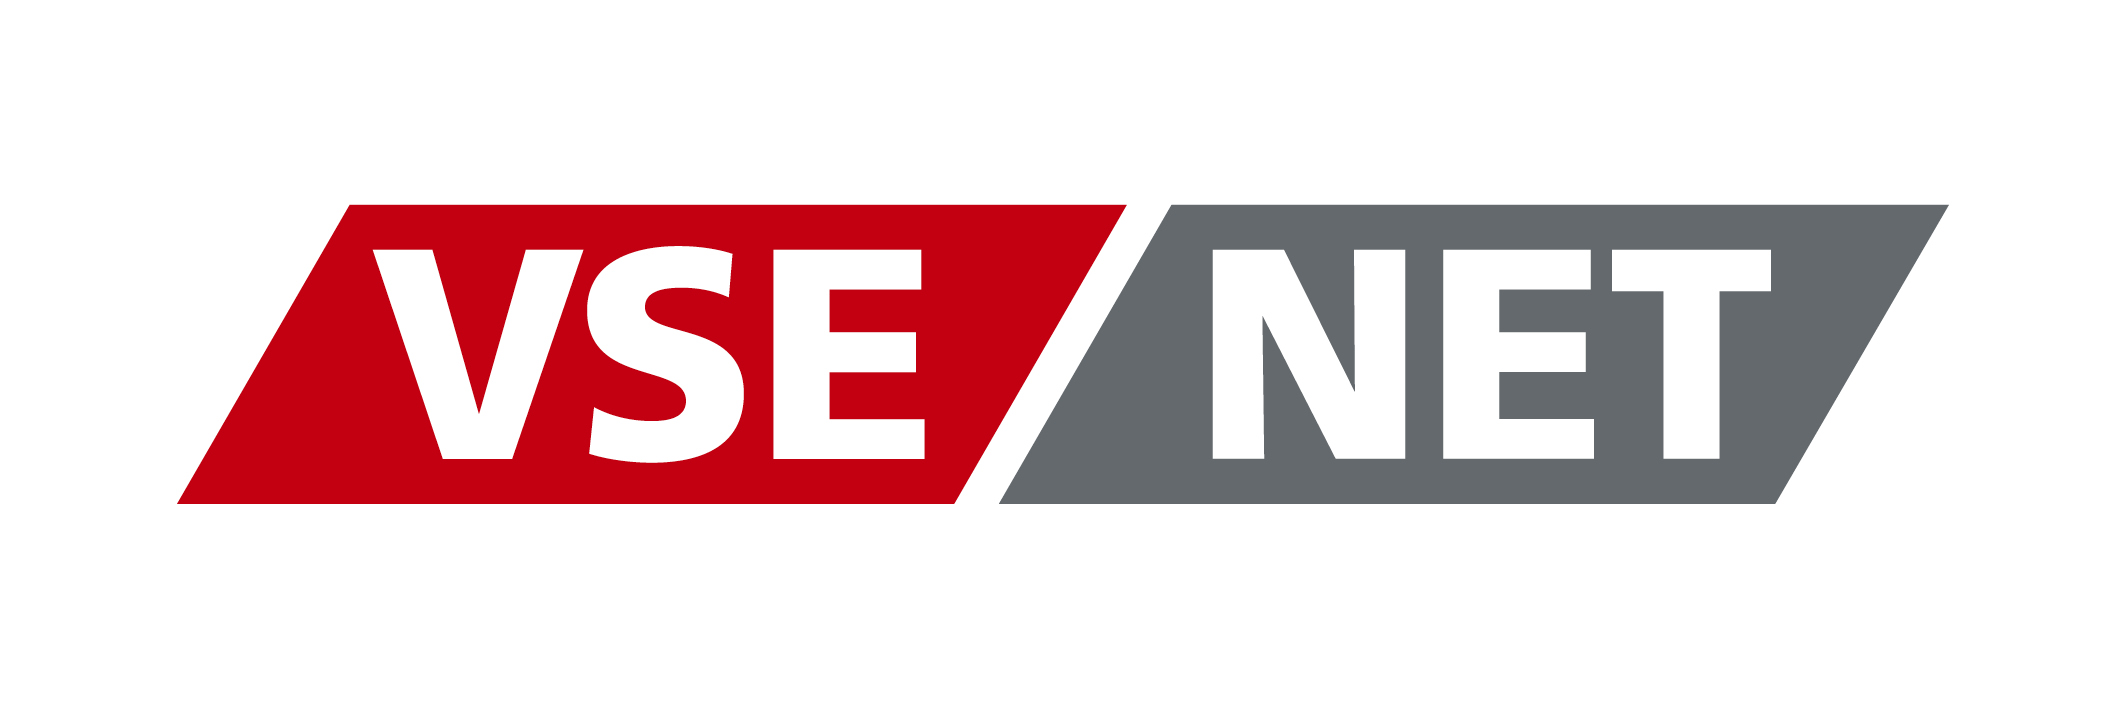 VSE NET GmbH